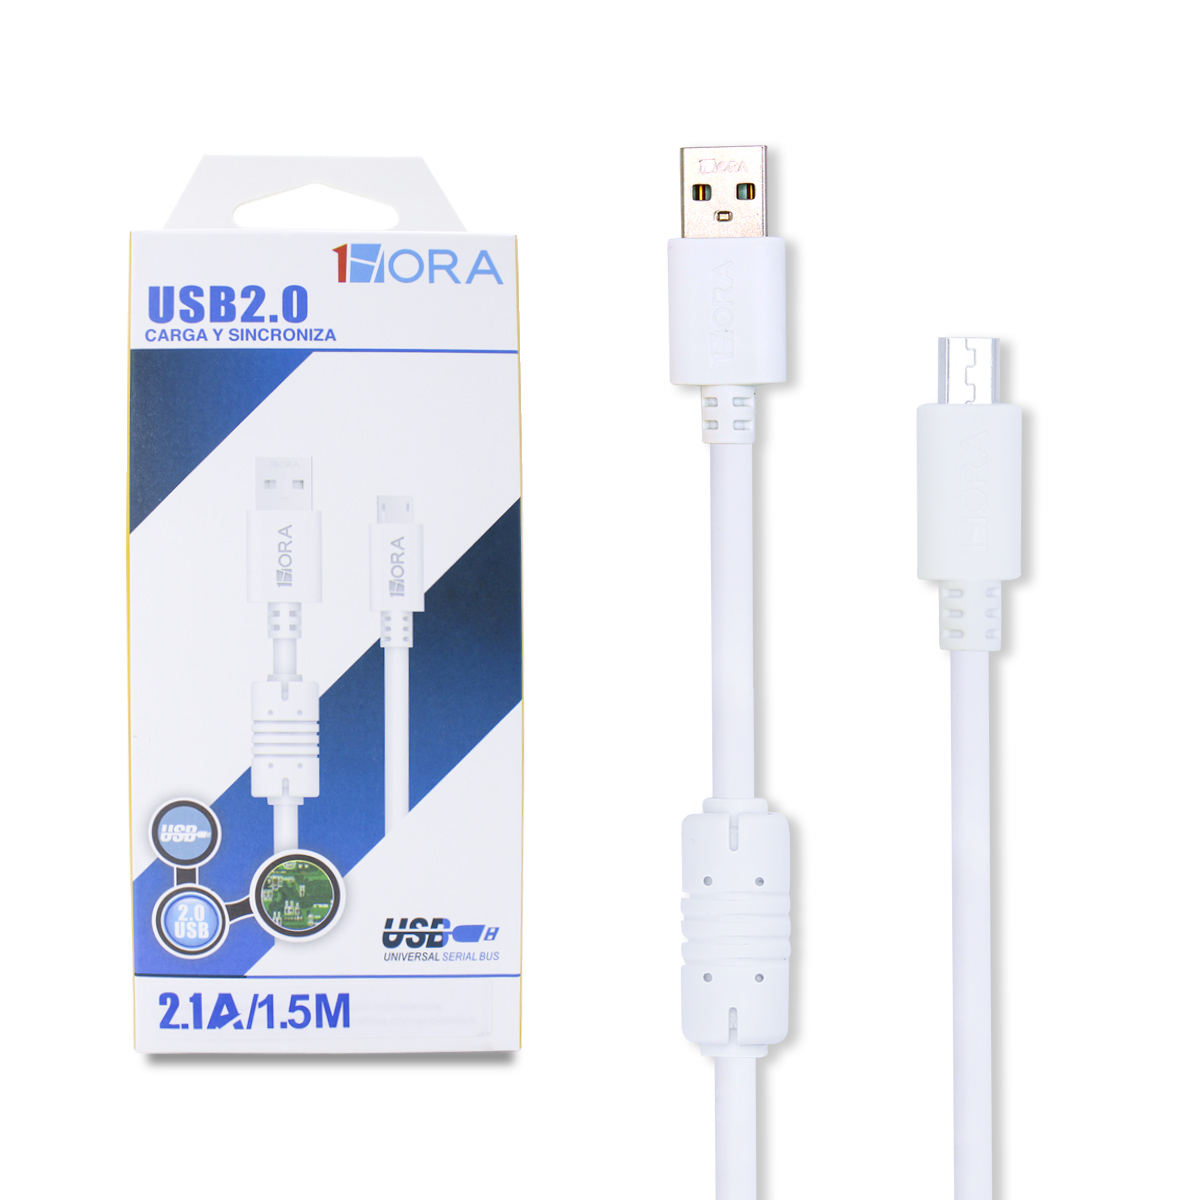 Cable USB 1Hora 2 metros, Entrada y Salida Tipo C, Carga Rápida 2.1A; Negro